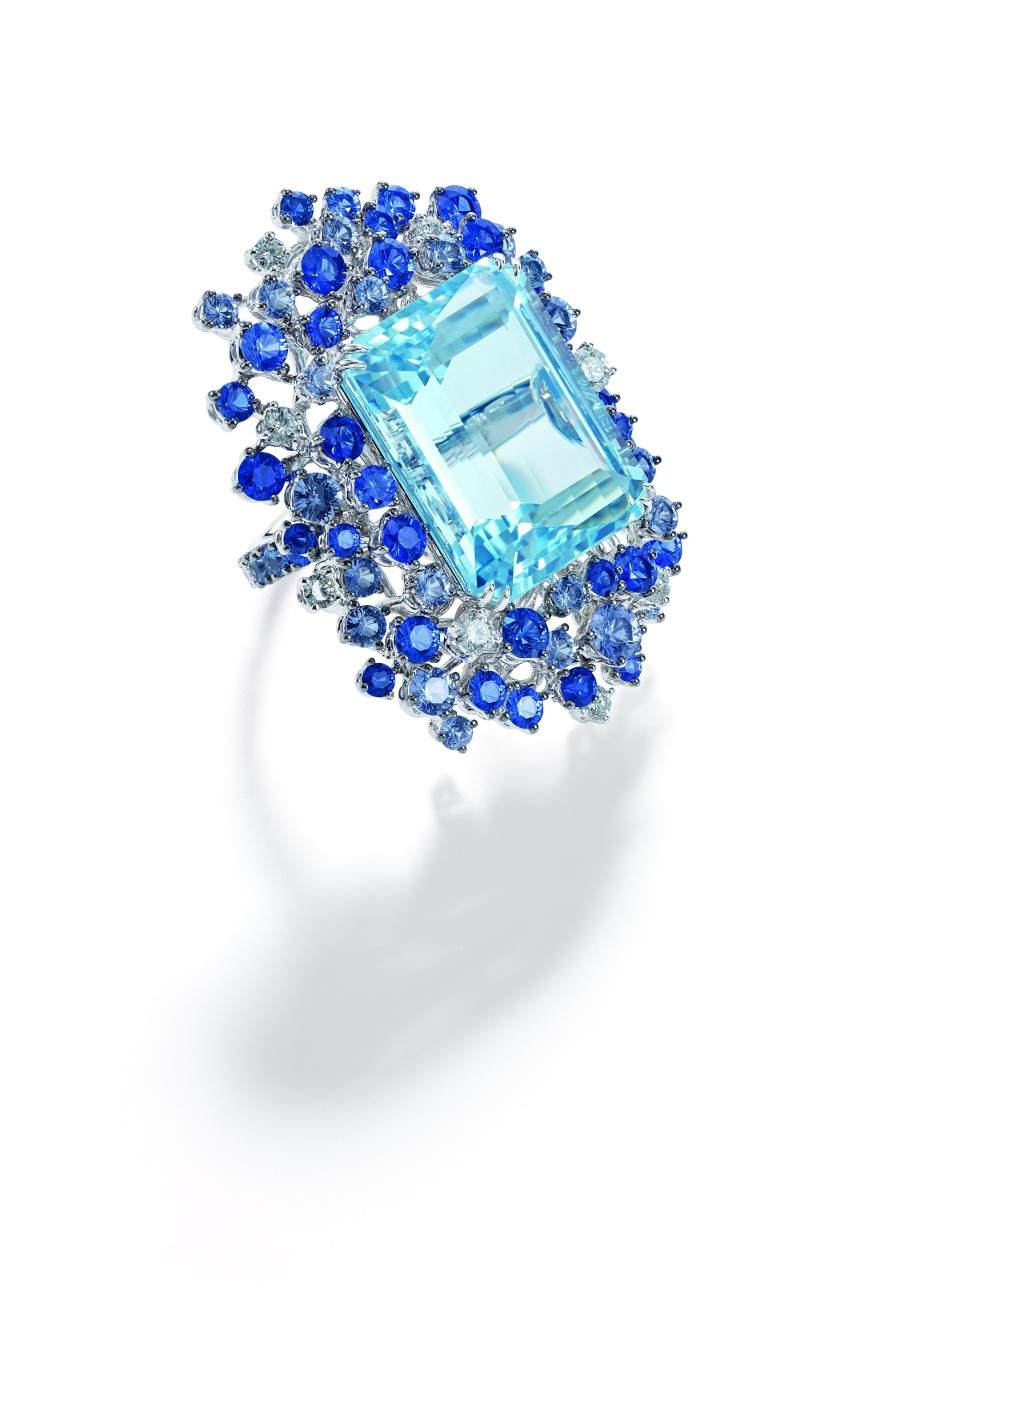 主石为单颗巨型海蓝宝石的指环。（Damiani）